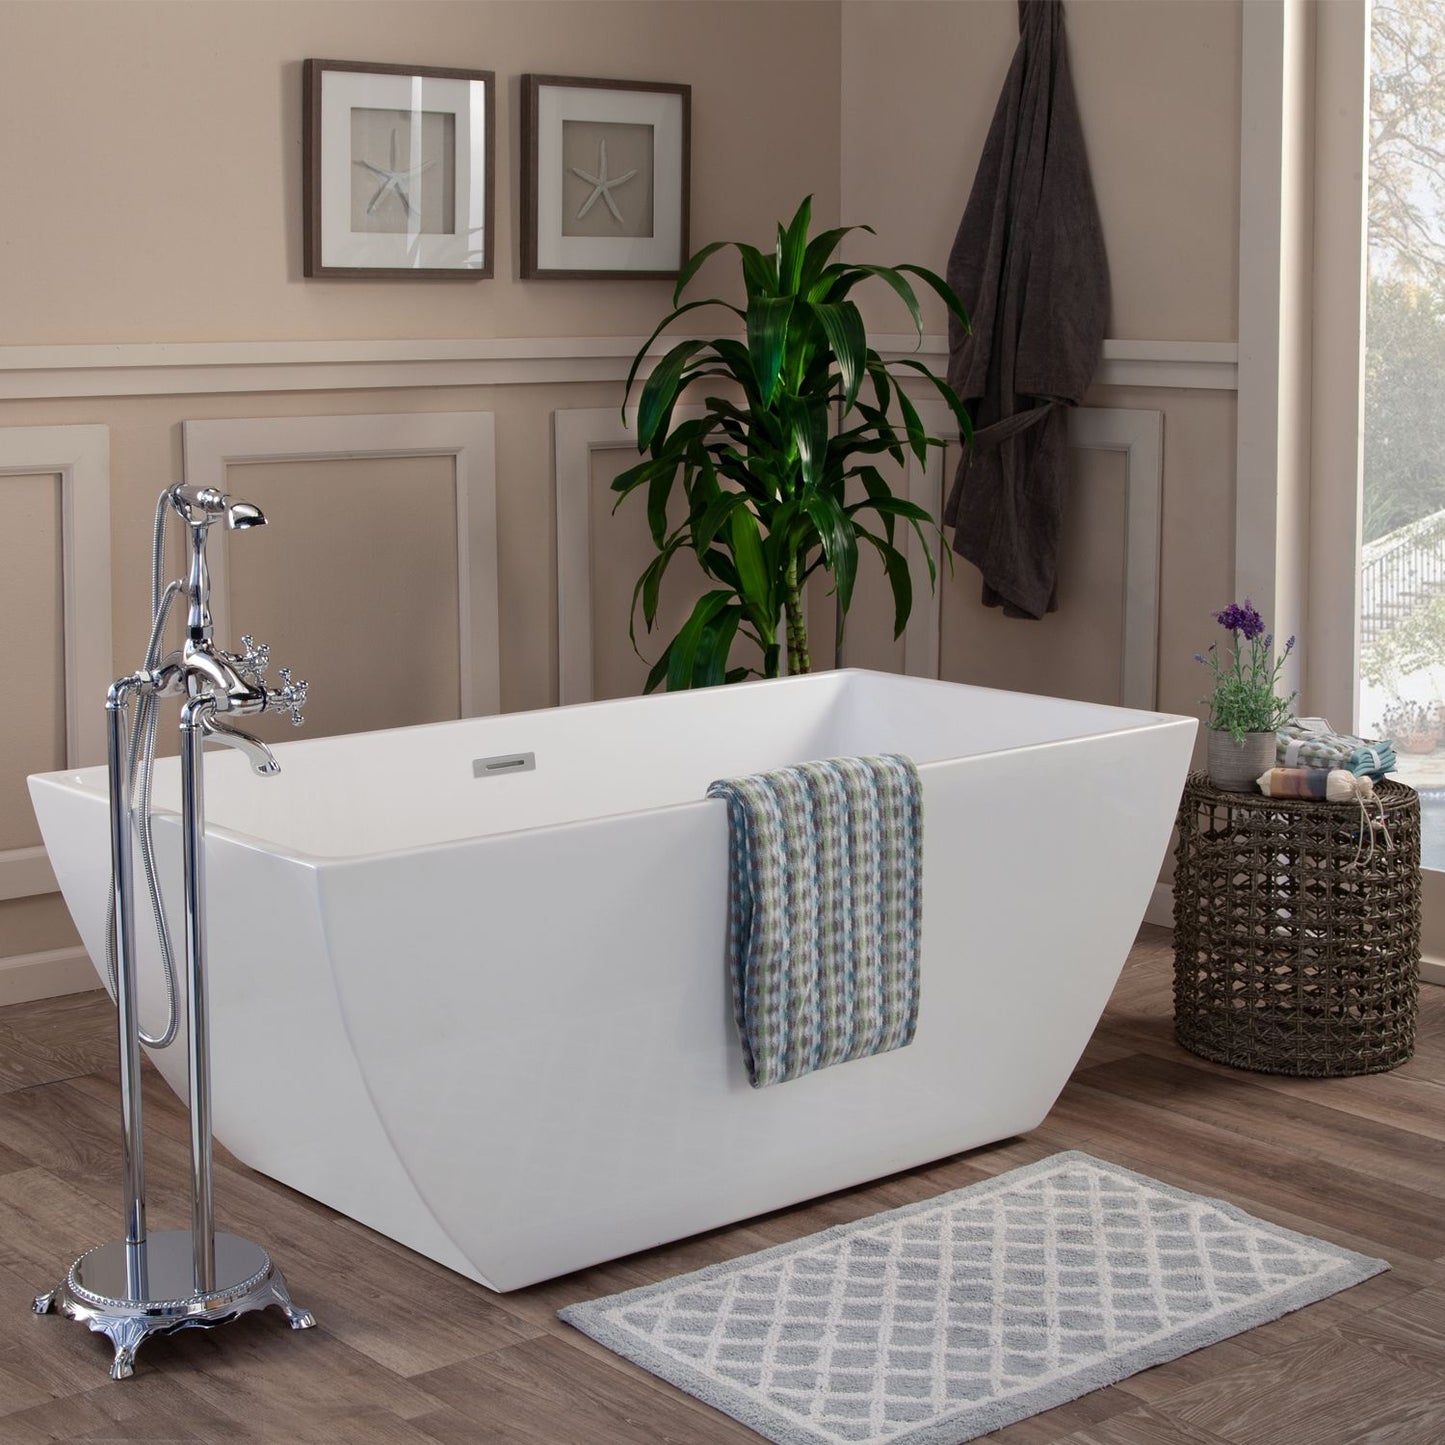 Altair Montague 67" x 32" Freestanding Soaking Acrylic Bathtub - Luxe Bathroom Vanities